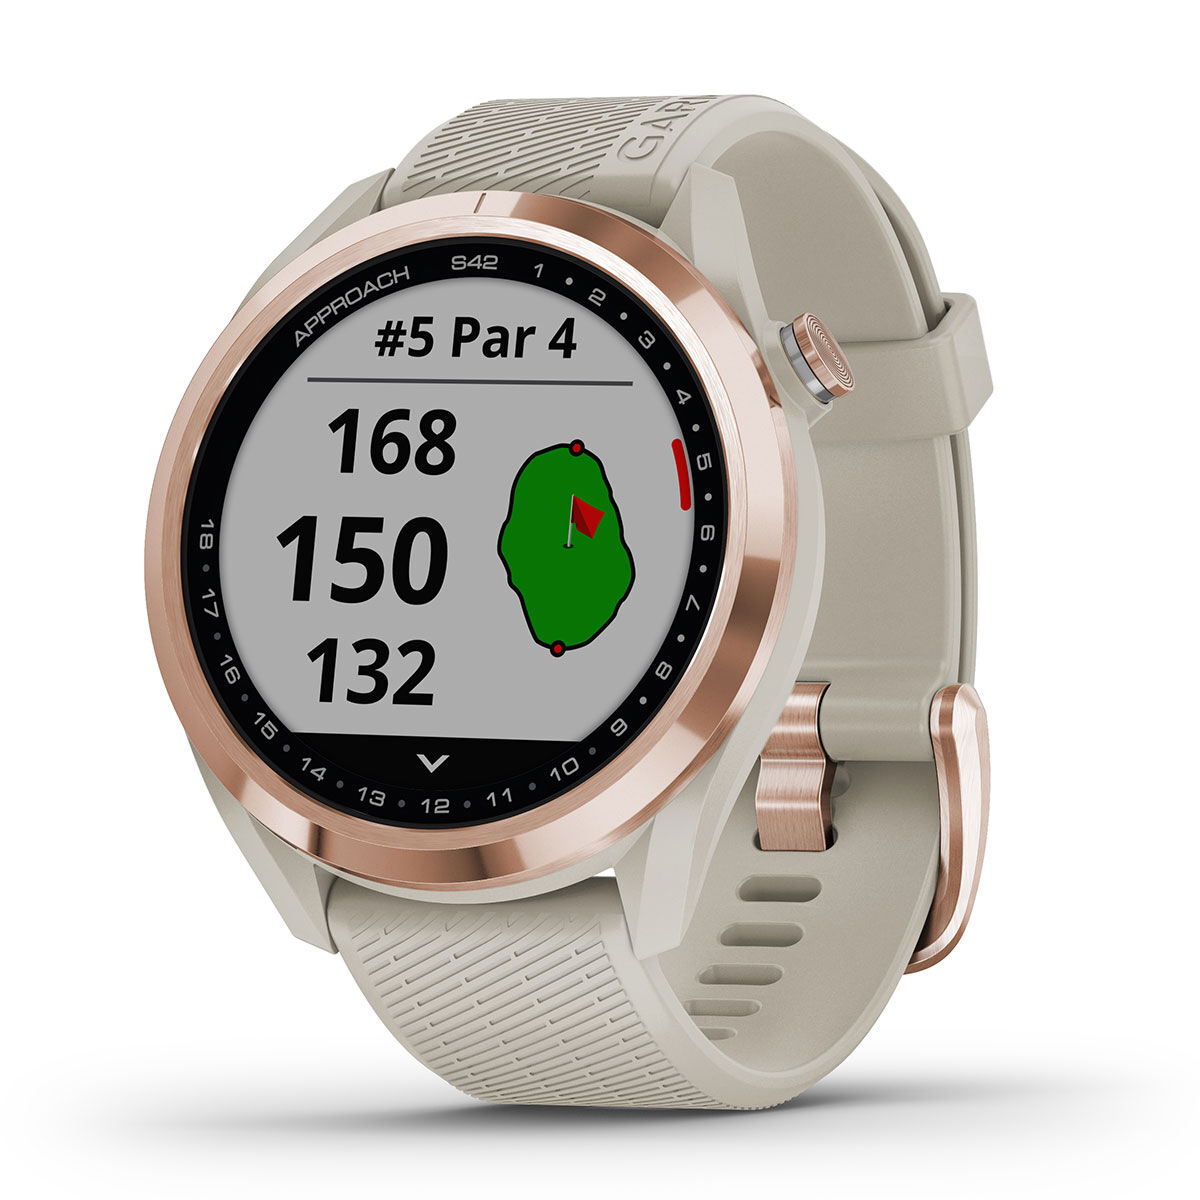 Garmin Rose Gold and Beige Approach S42 Golf GPS Watch| American Golf, One Size von Garmin